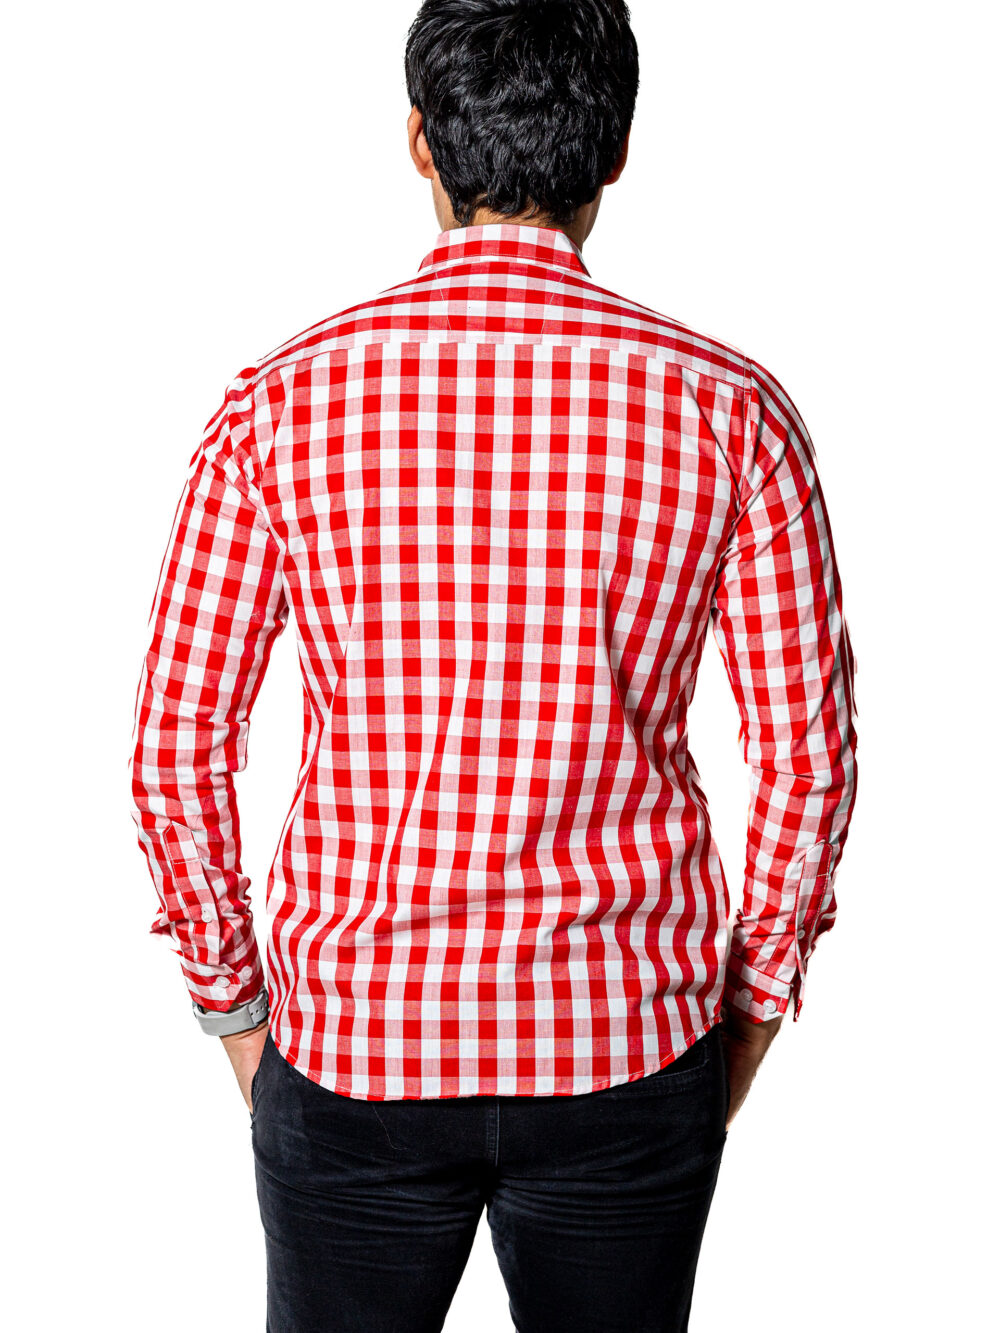 Camisa Hombre Casual Slim Fit Cuadros Rojos, Blancos 004 4